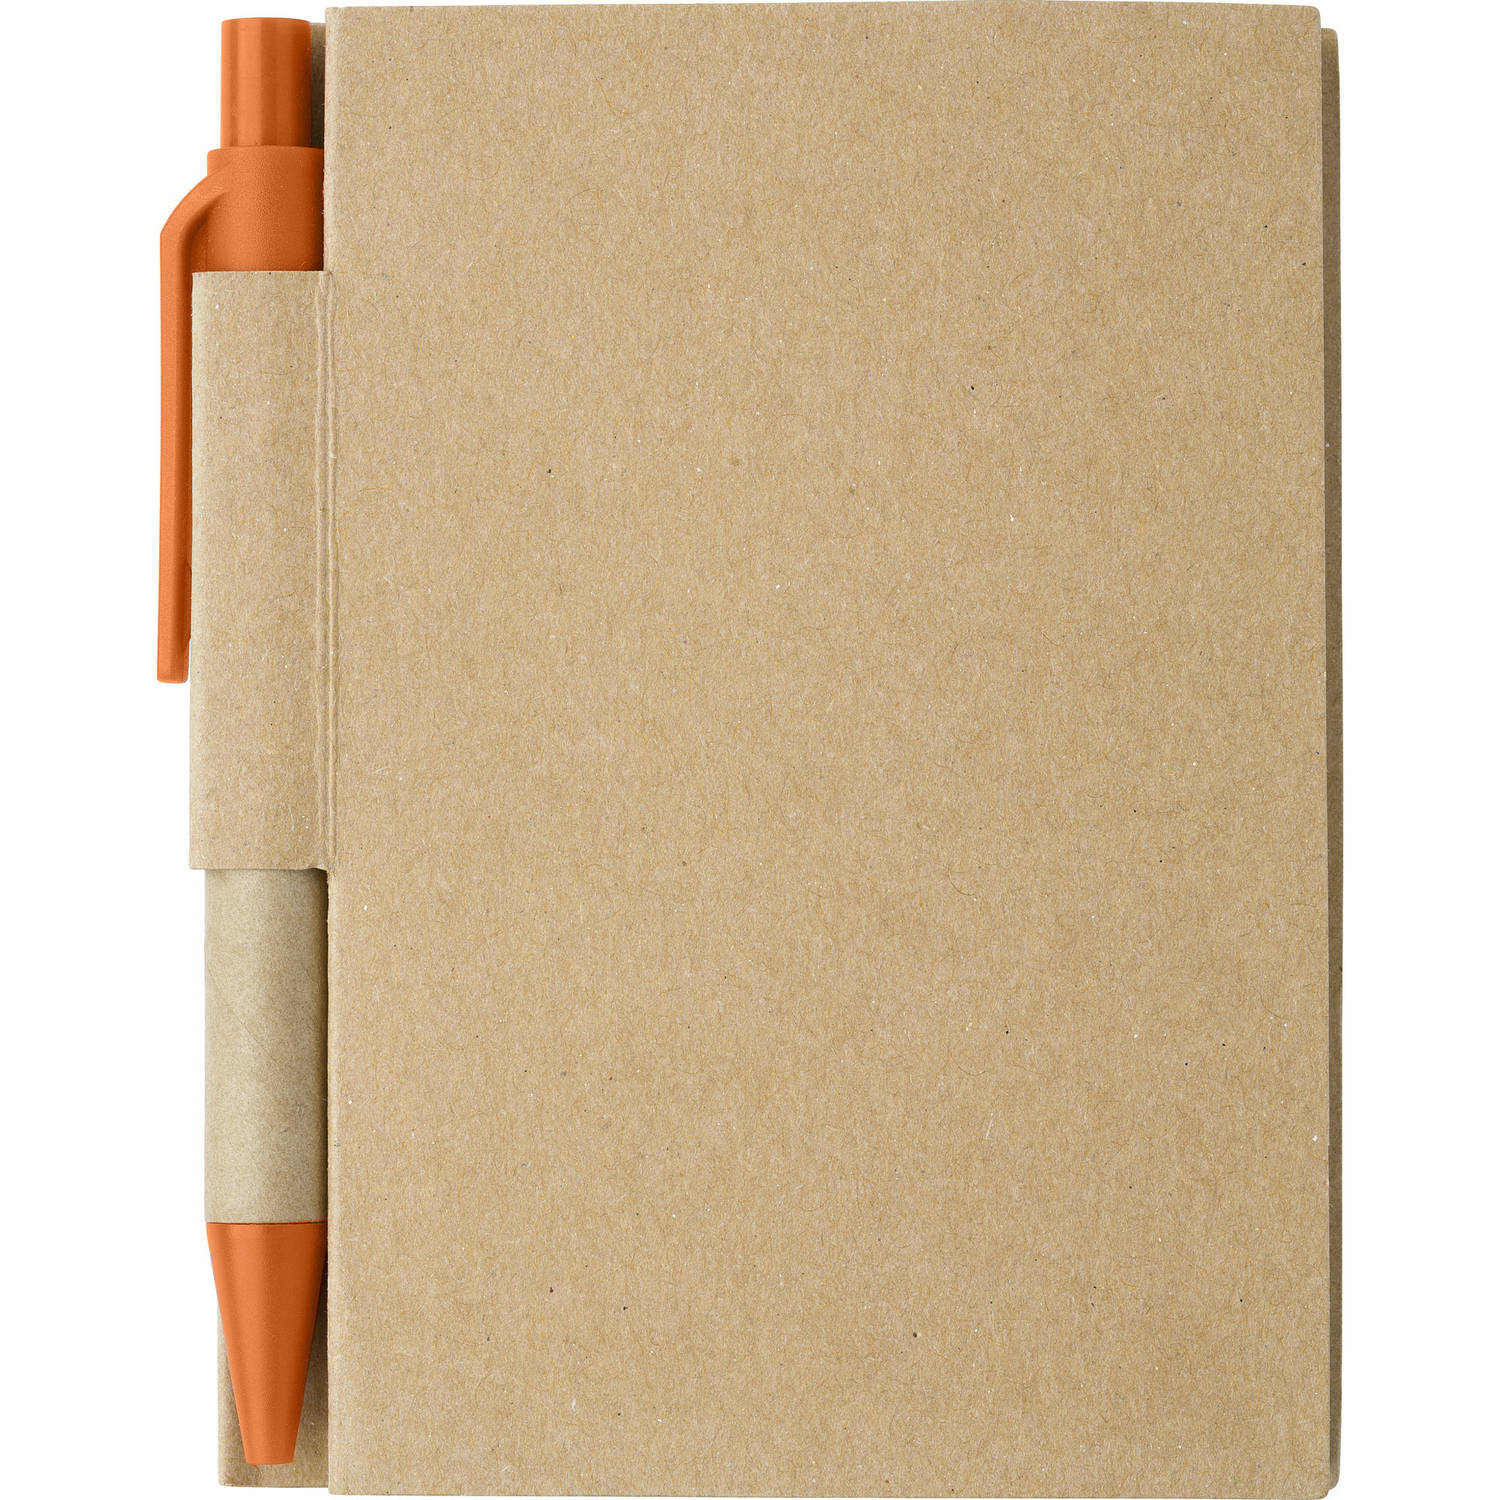 Notitie-opschrijf boekje met balpen harde kaft beige-oranje 11x8cm 80blz gelinieerd Notitieboek